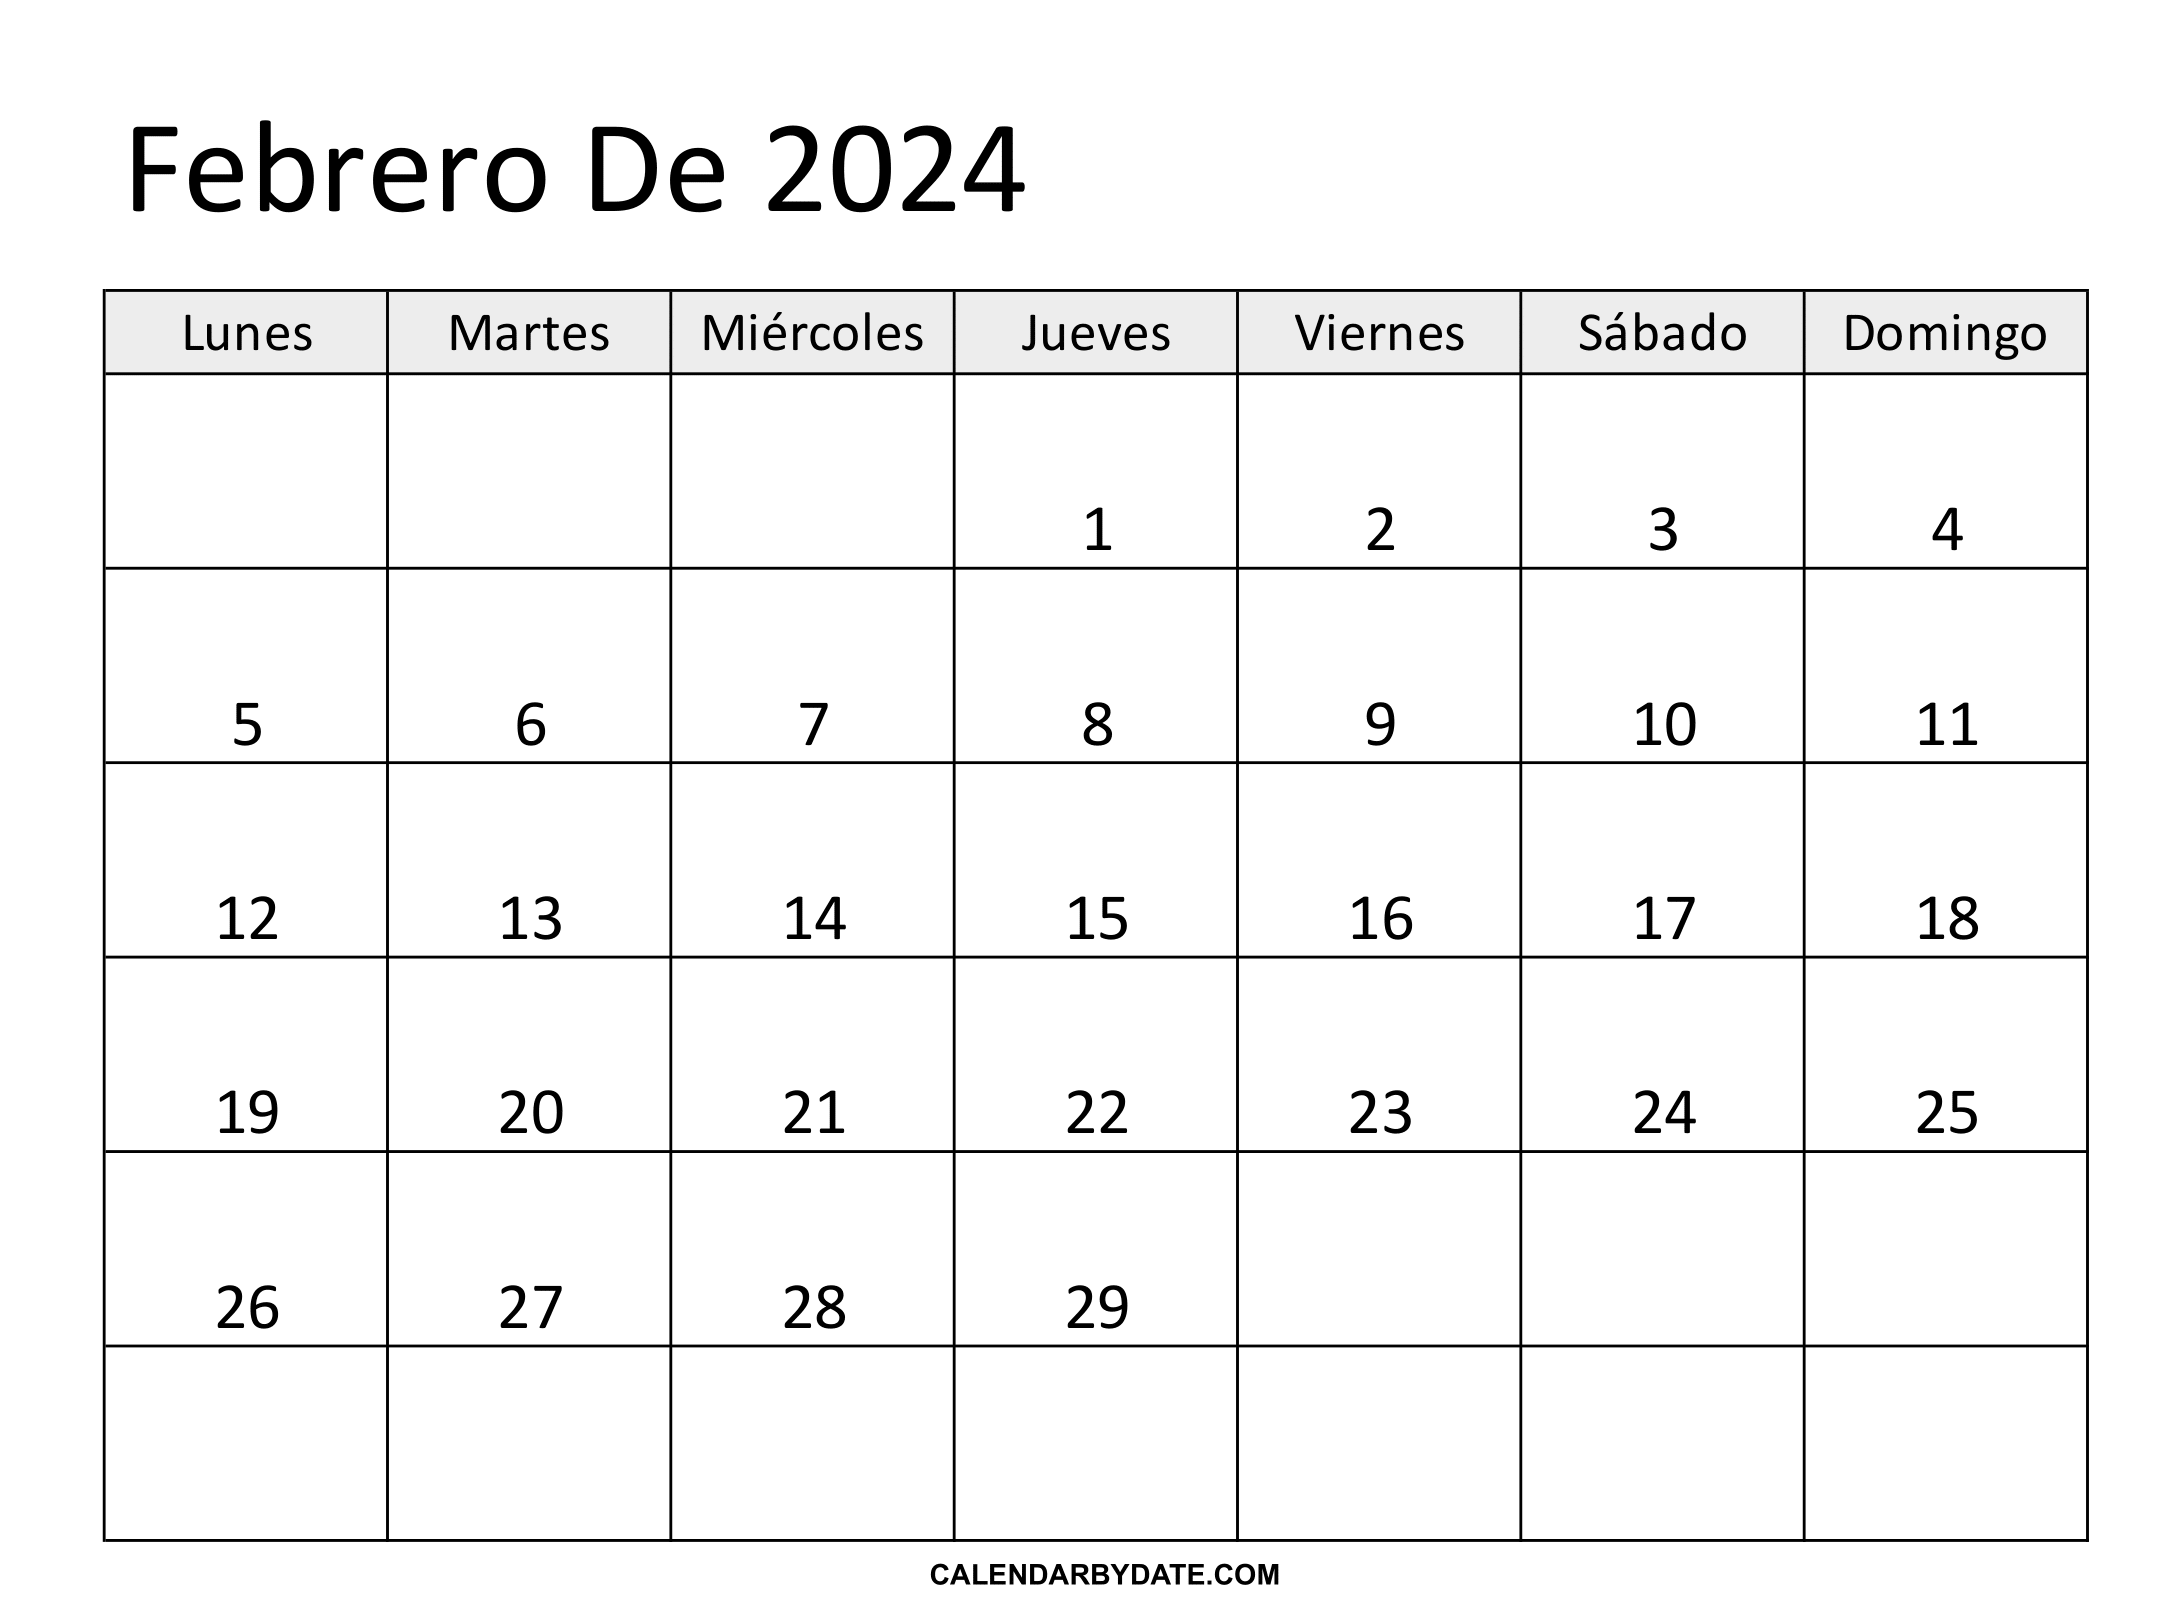 Calendario febrero 2024 con festivos